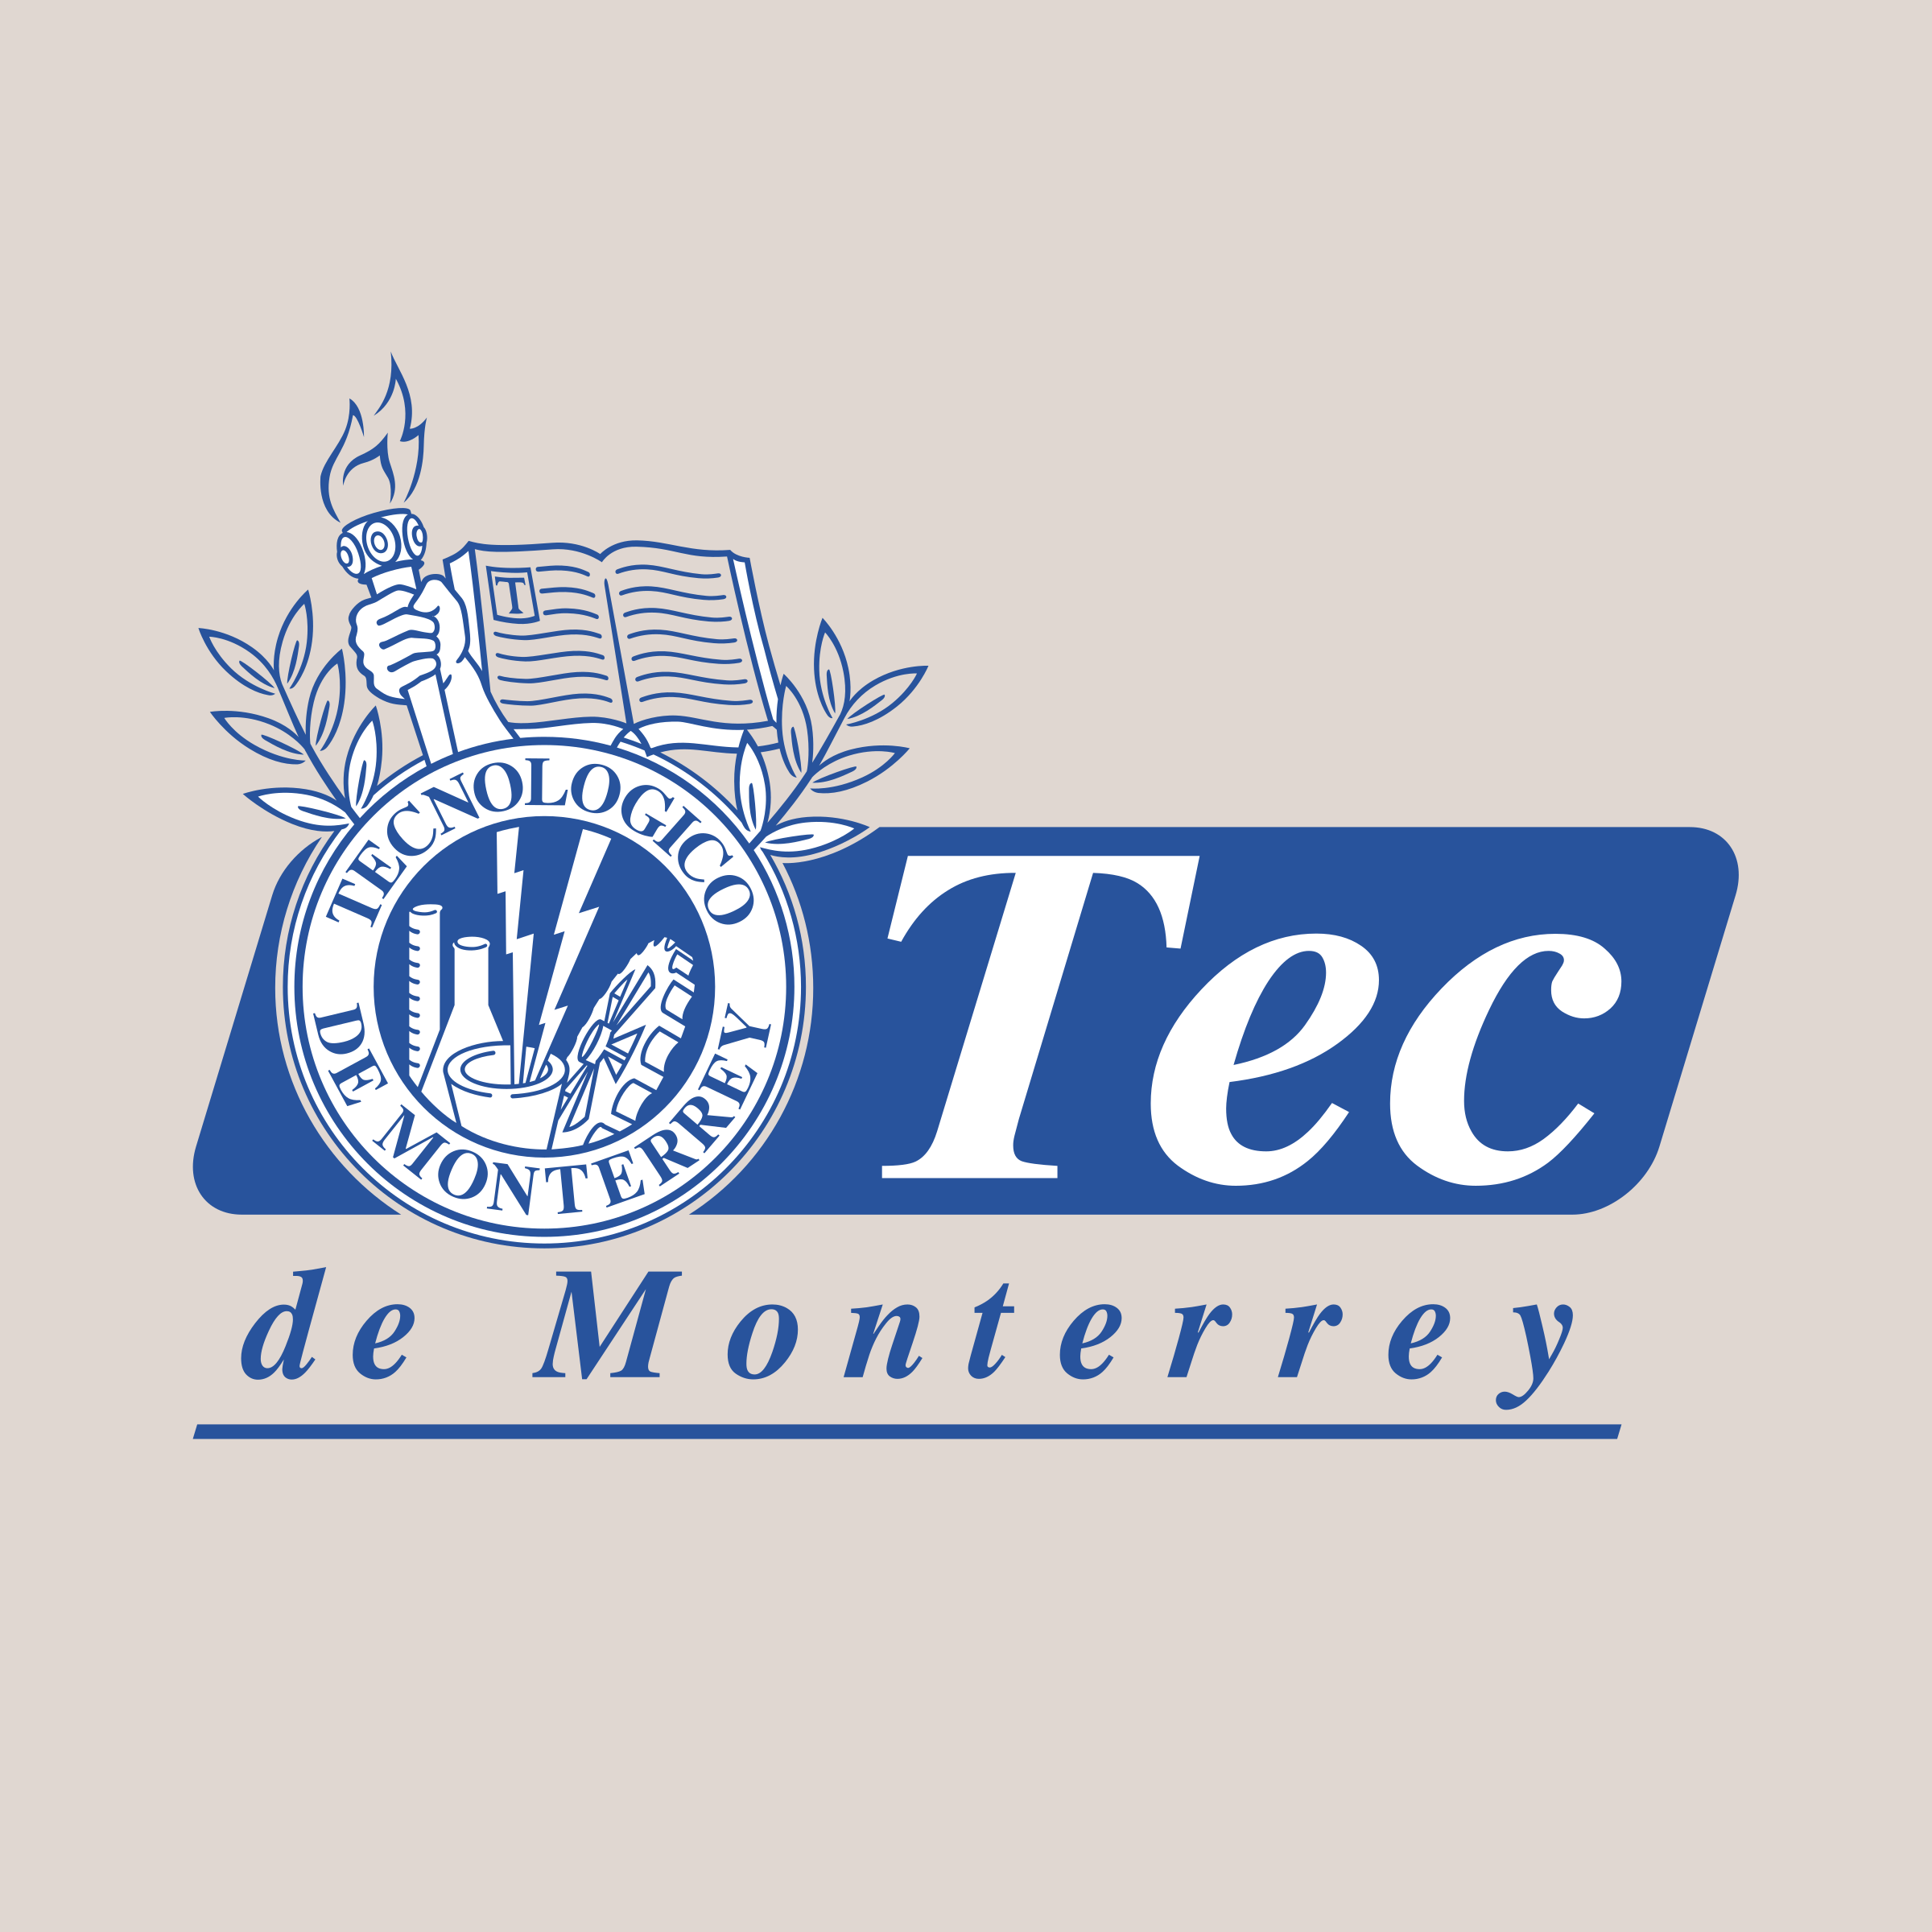 Tec de Monterrey Logo PNG Transparent & SVG Vector.